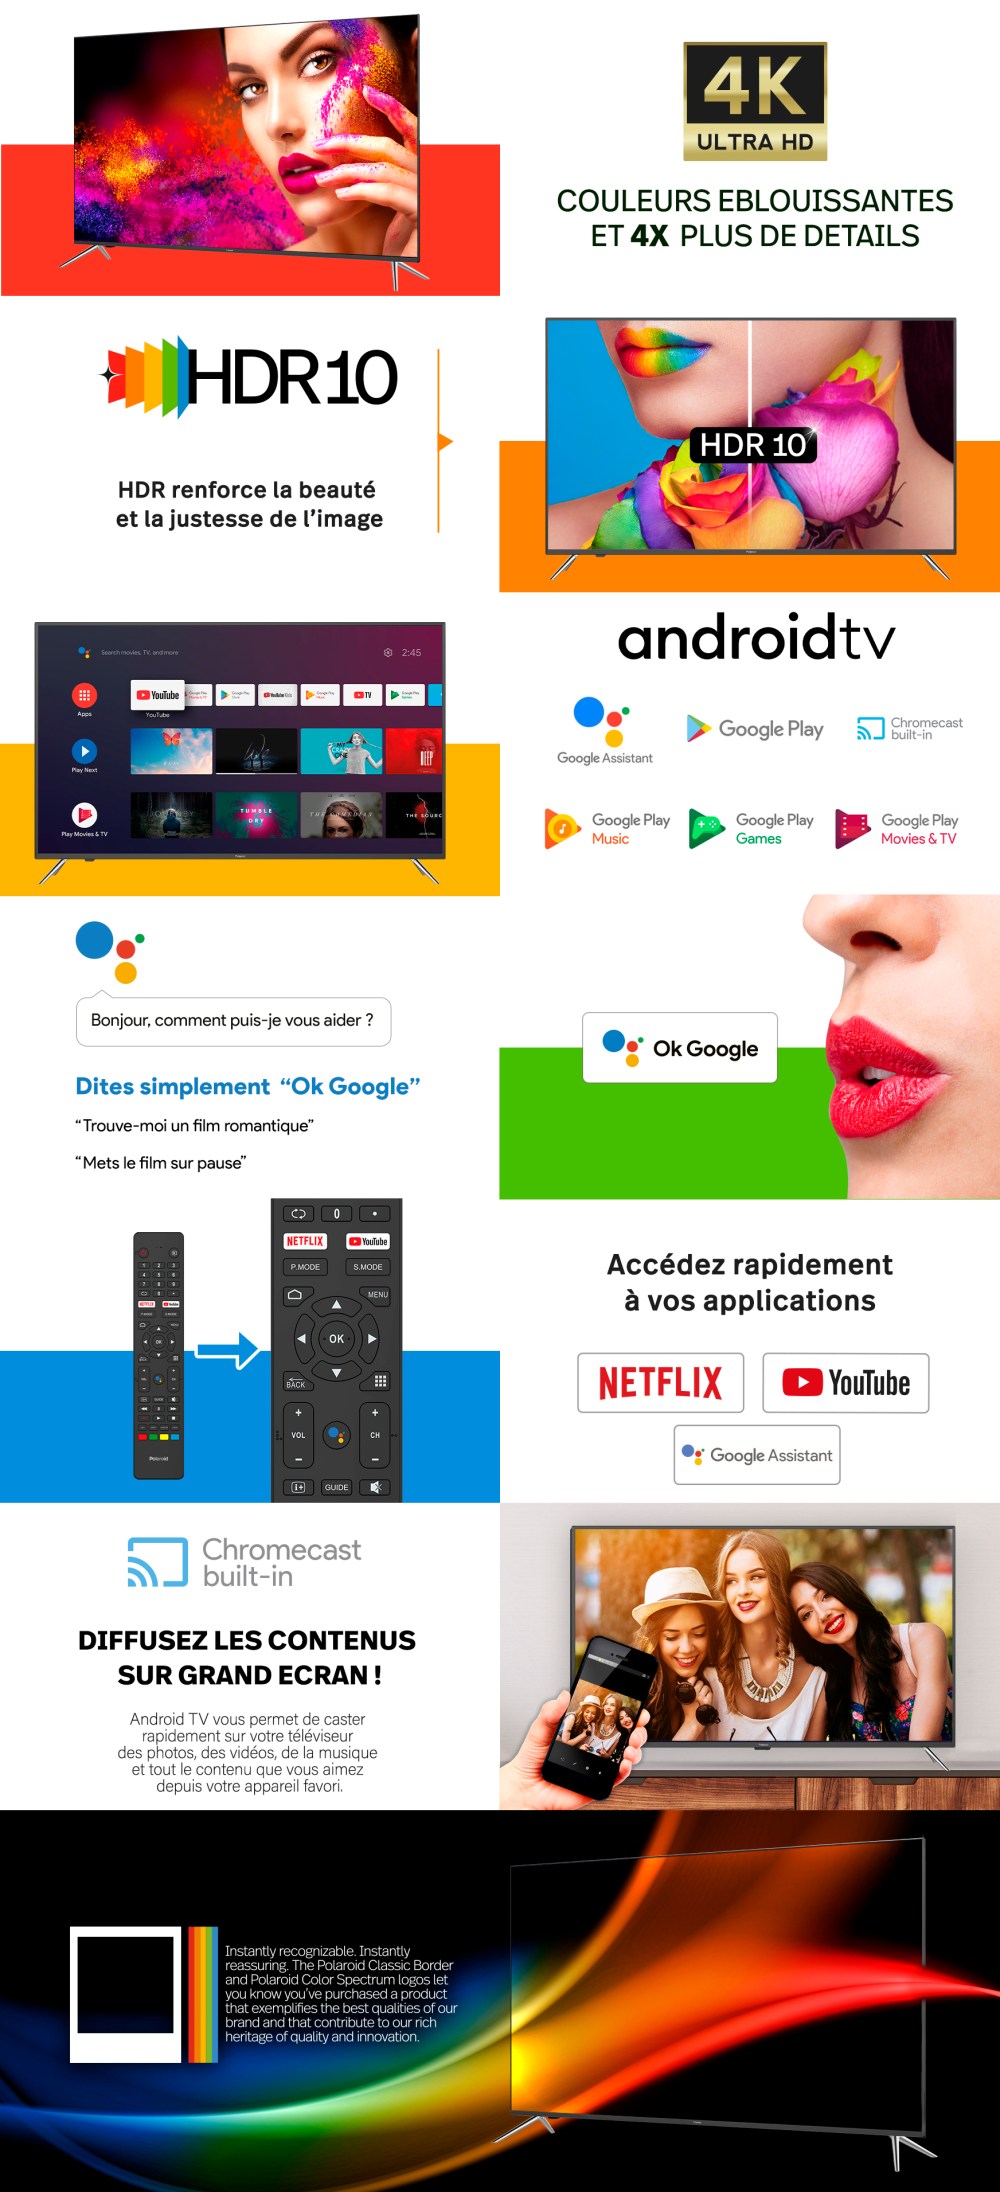 Découvrez notre Smart TV 50' OS Android 9.0 combinée avec l'image exceptionnelle par Polaroid. Navigation intuitive entre les applications avec l'interface Android et les boutons raccourcis de la télécommande. Accédez instantanément à des milliers d'applications disponibles sur le Google Play Store. Partager les écrans grace à la fonction Chromecast